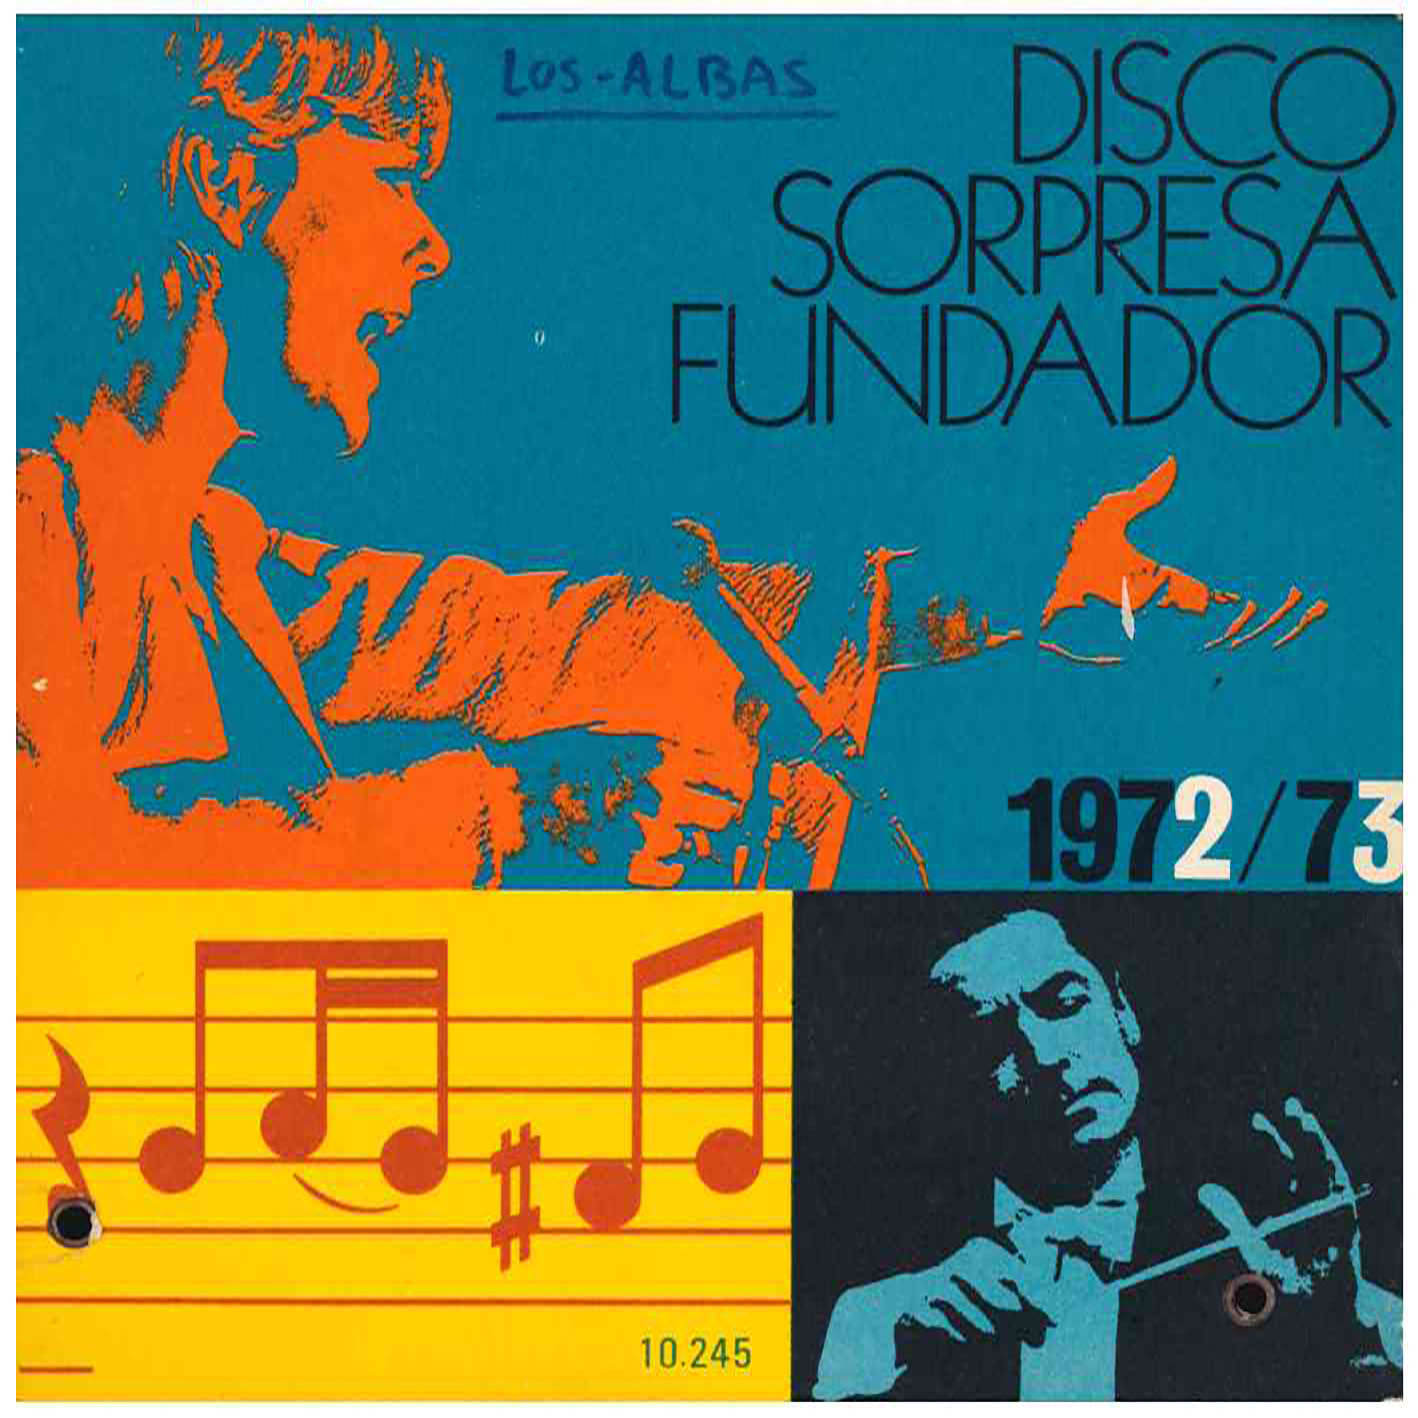 Fundador. Disco Sorpresa. Iberofon 1972/73